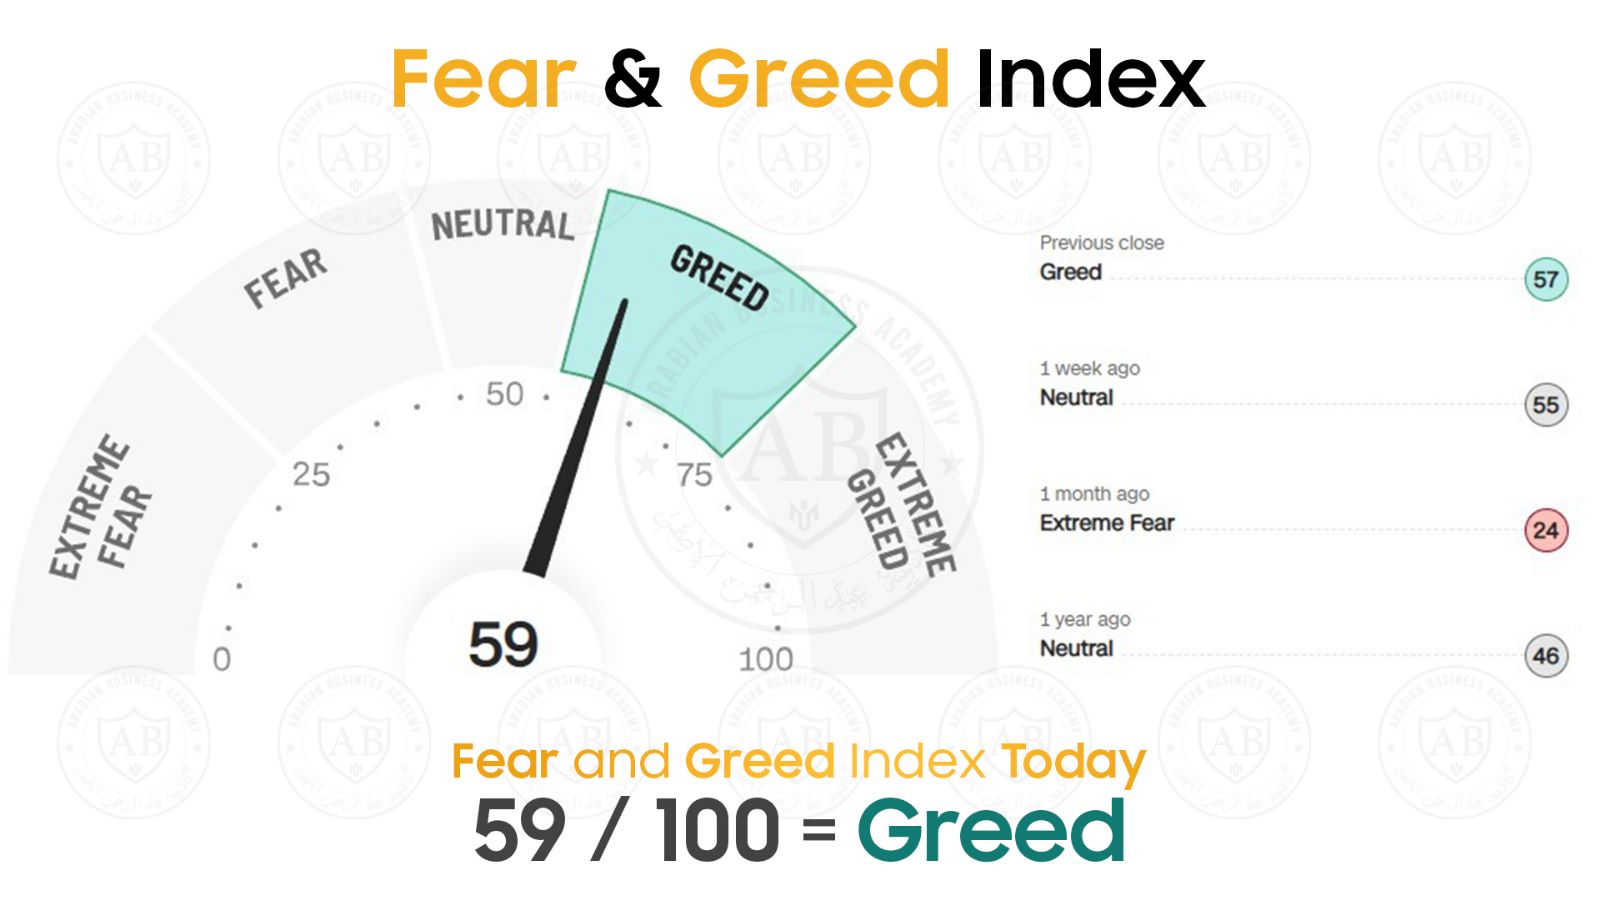 مؤشر  Fear and Greed  في أسواق الأسهم يشير  الى 59 /100  لجلسة اليوم